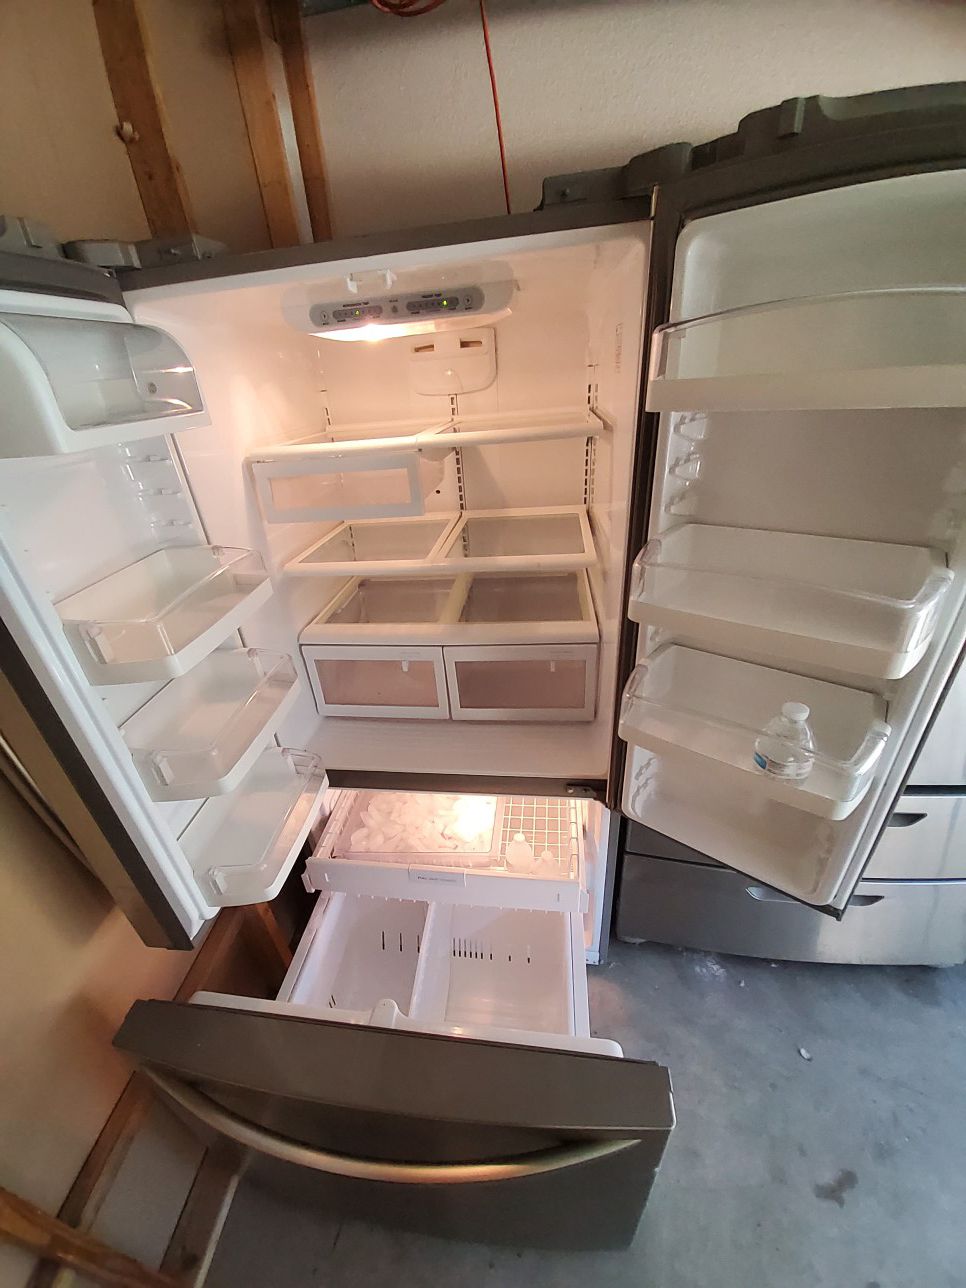 Refrigerator Lg SE HABLA ESPAÑOL Good condition 👌😊 Buenas condiciones Dimensions 33 w , 31 D, 69 H.